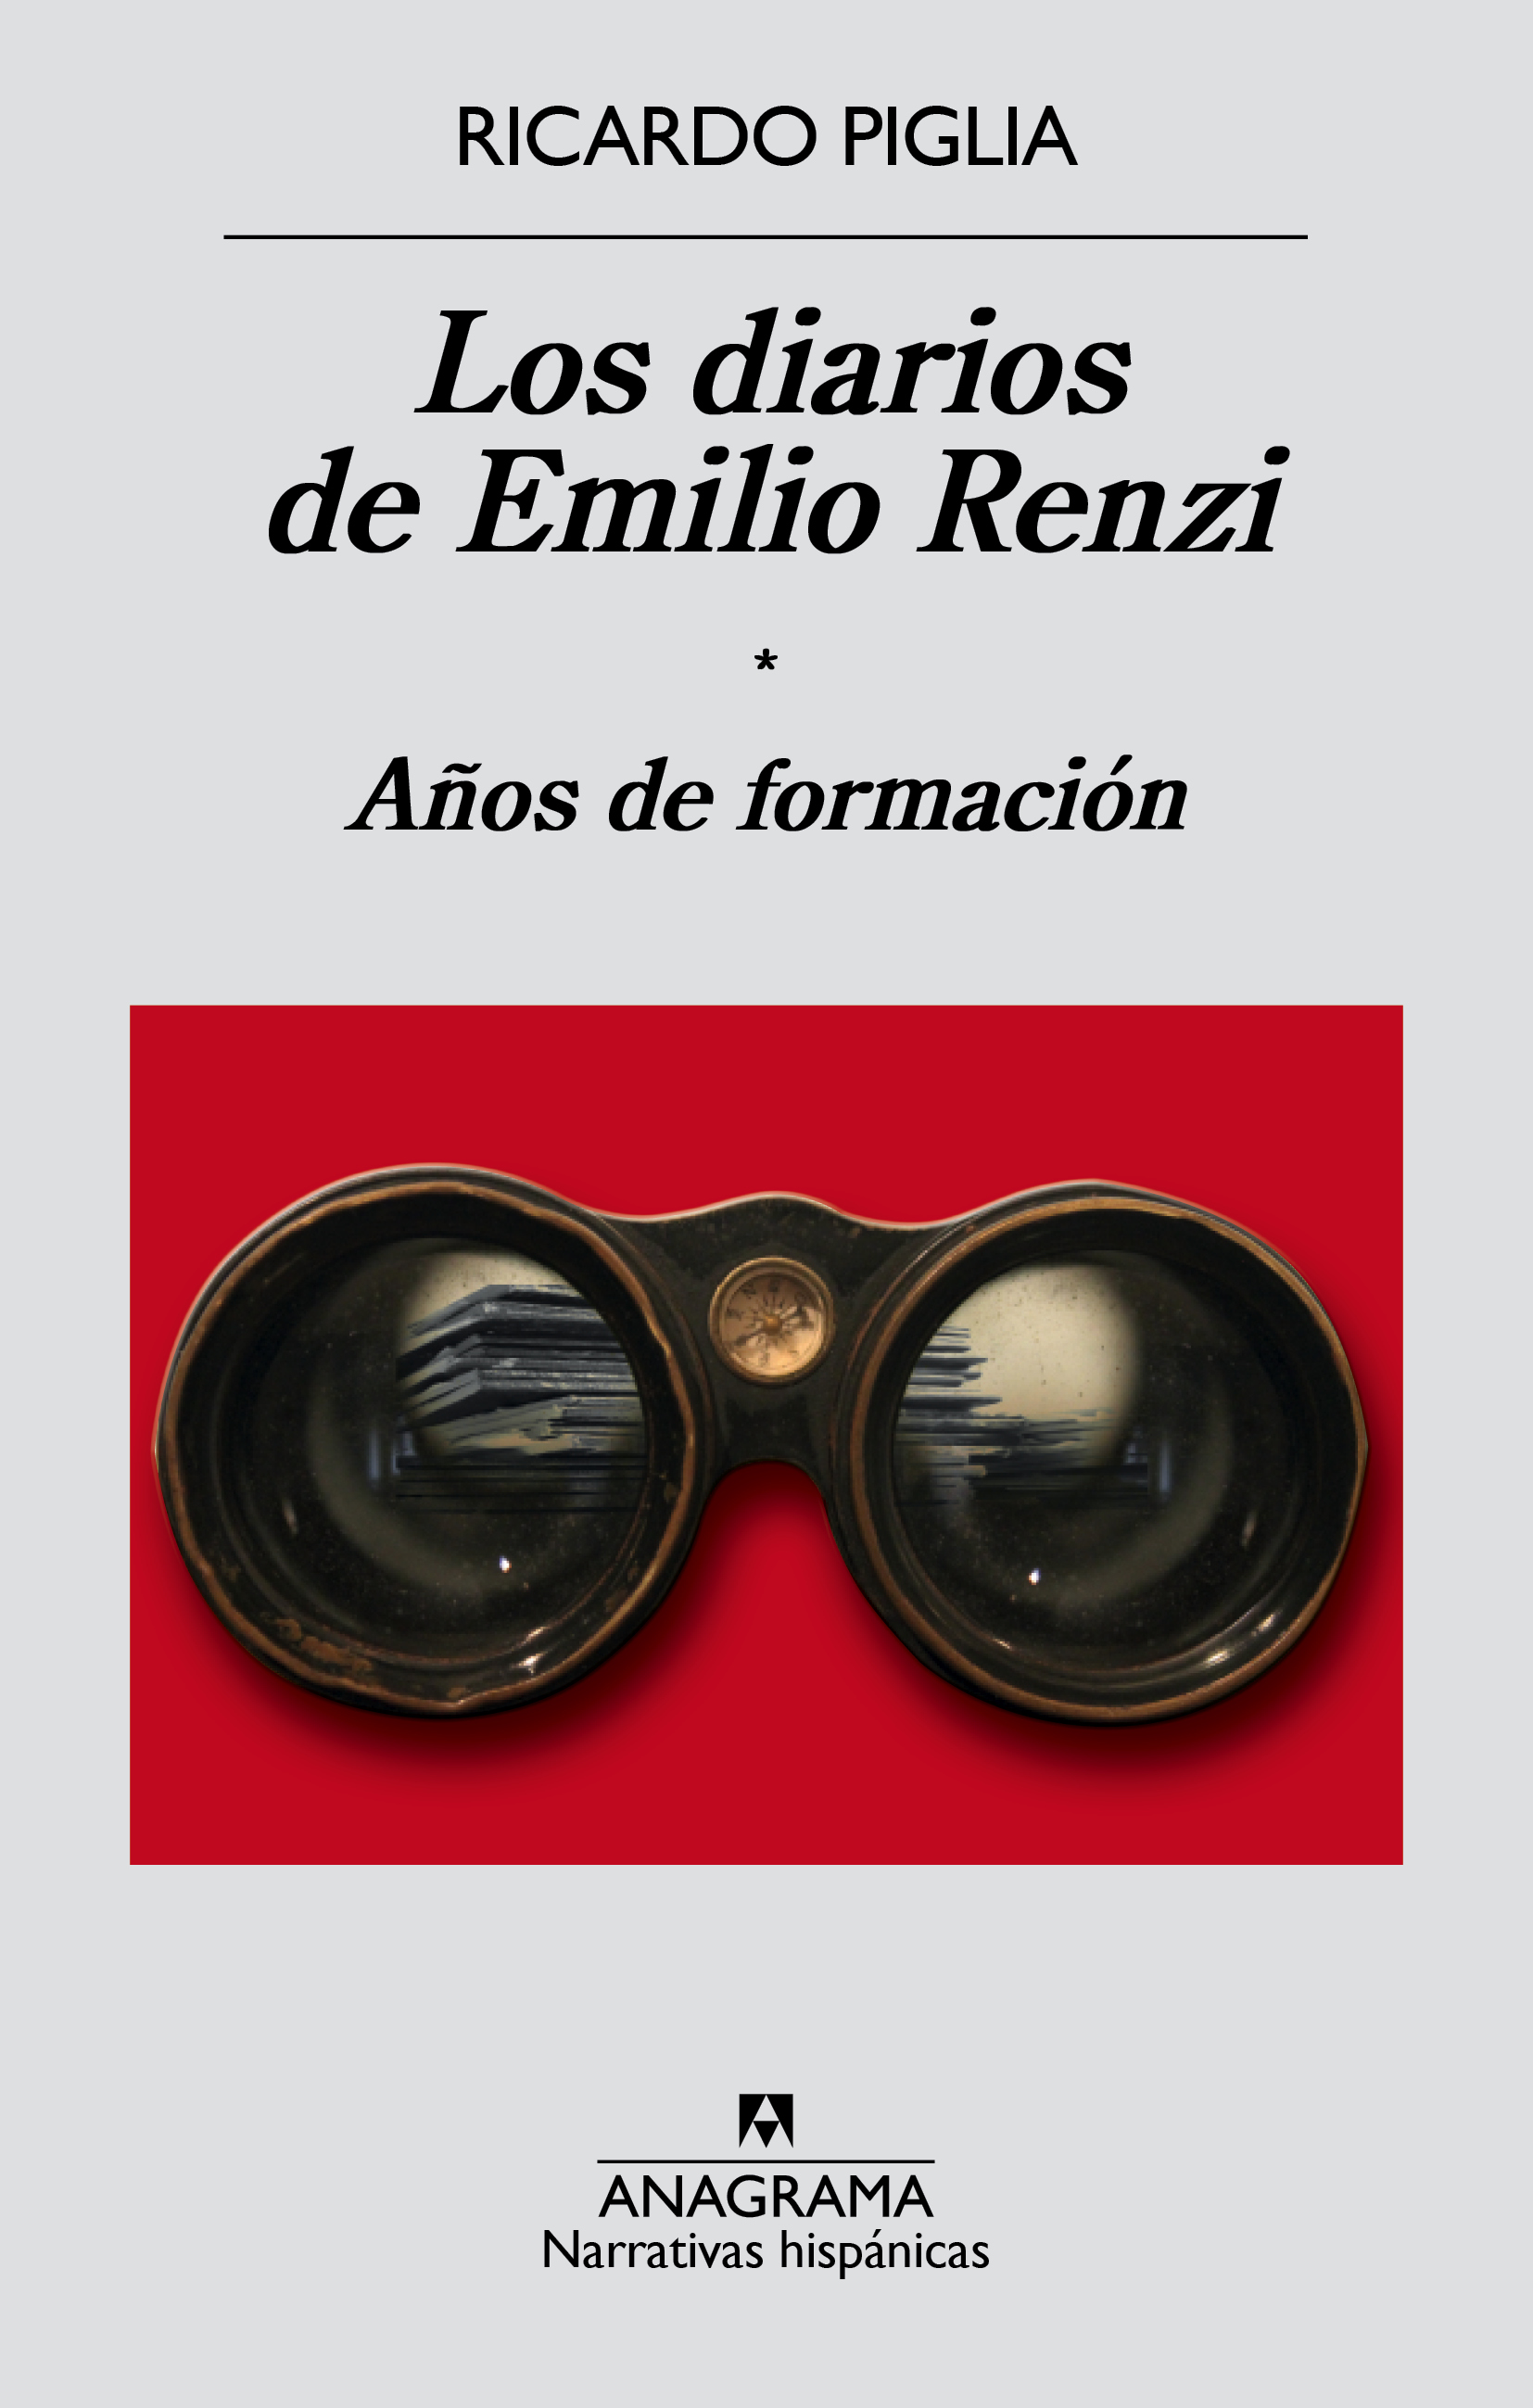 Los diarios de Emilio Renzi - Ricardo Piglia